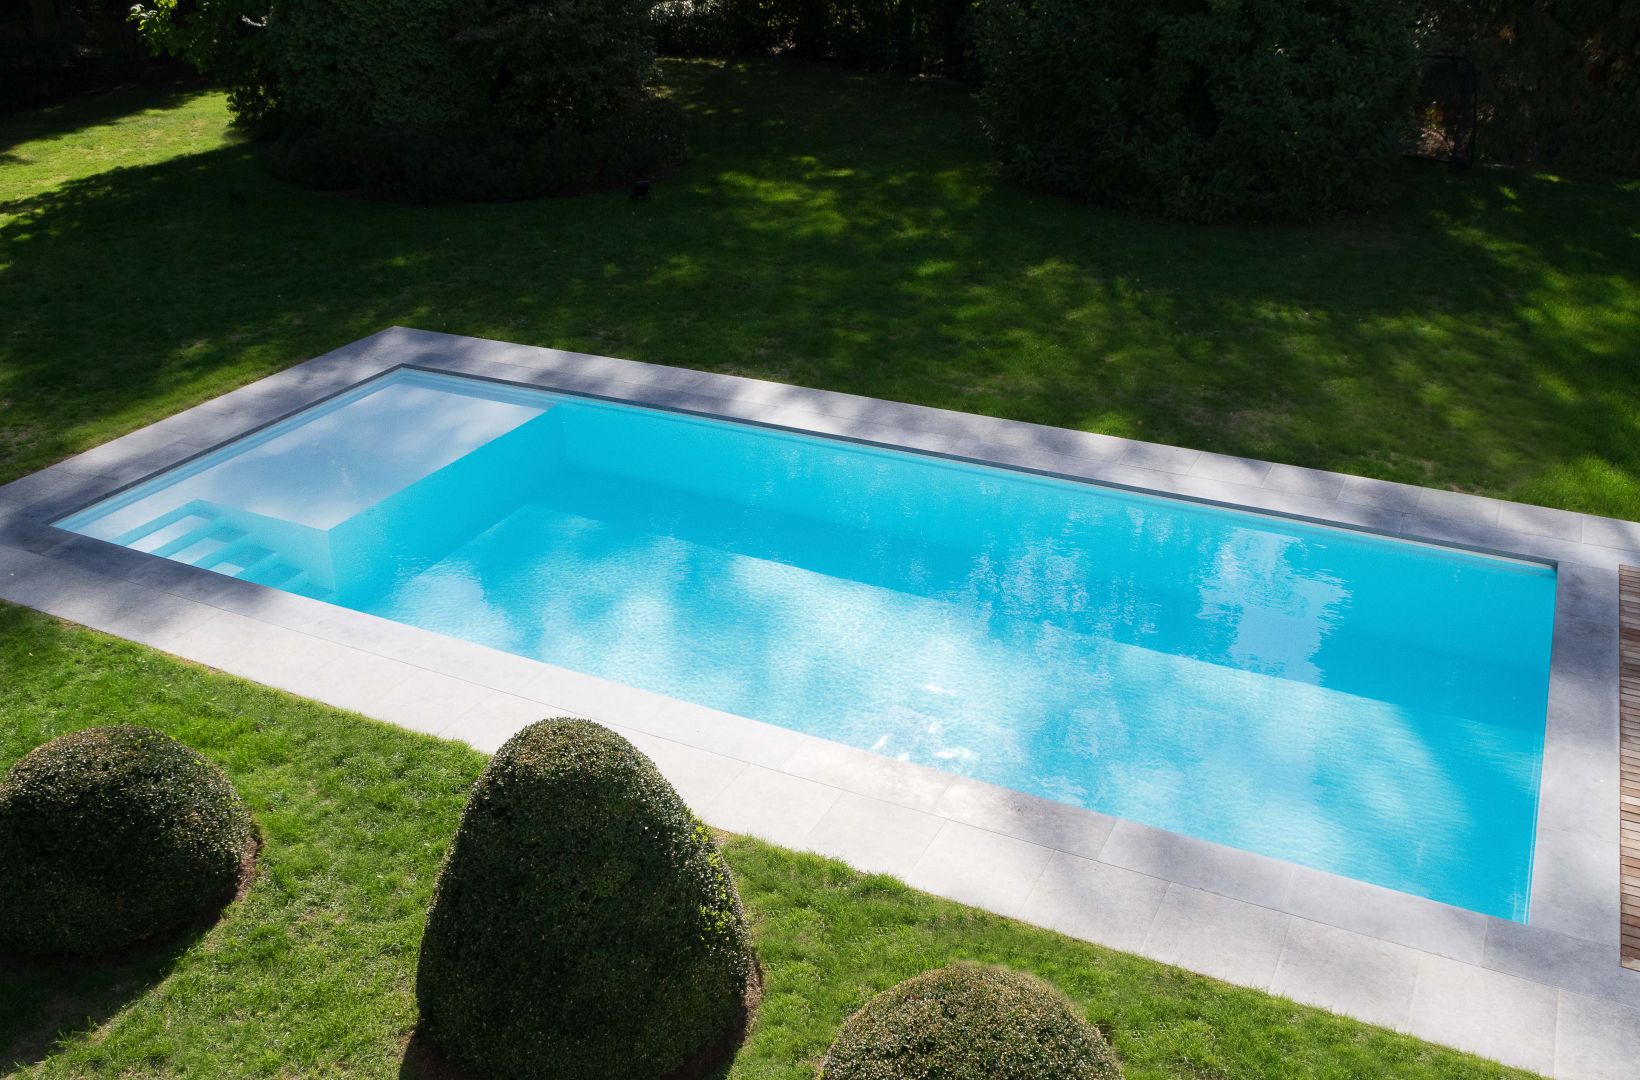 XL+ is het grootste composiet zwembad in full vinylester uit het gamma van LPW Pools. Hier meer info.